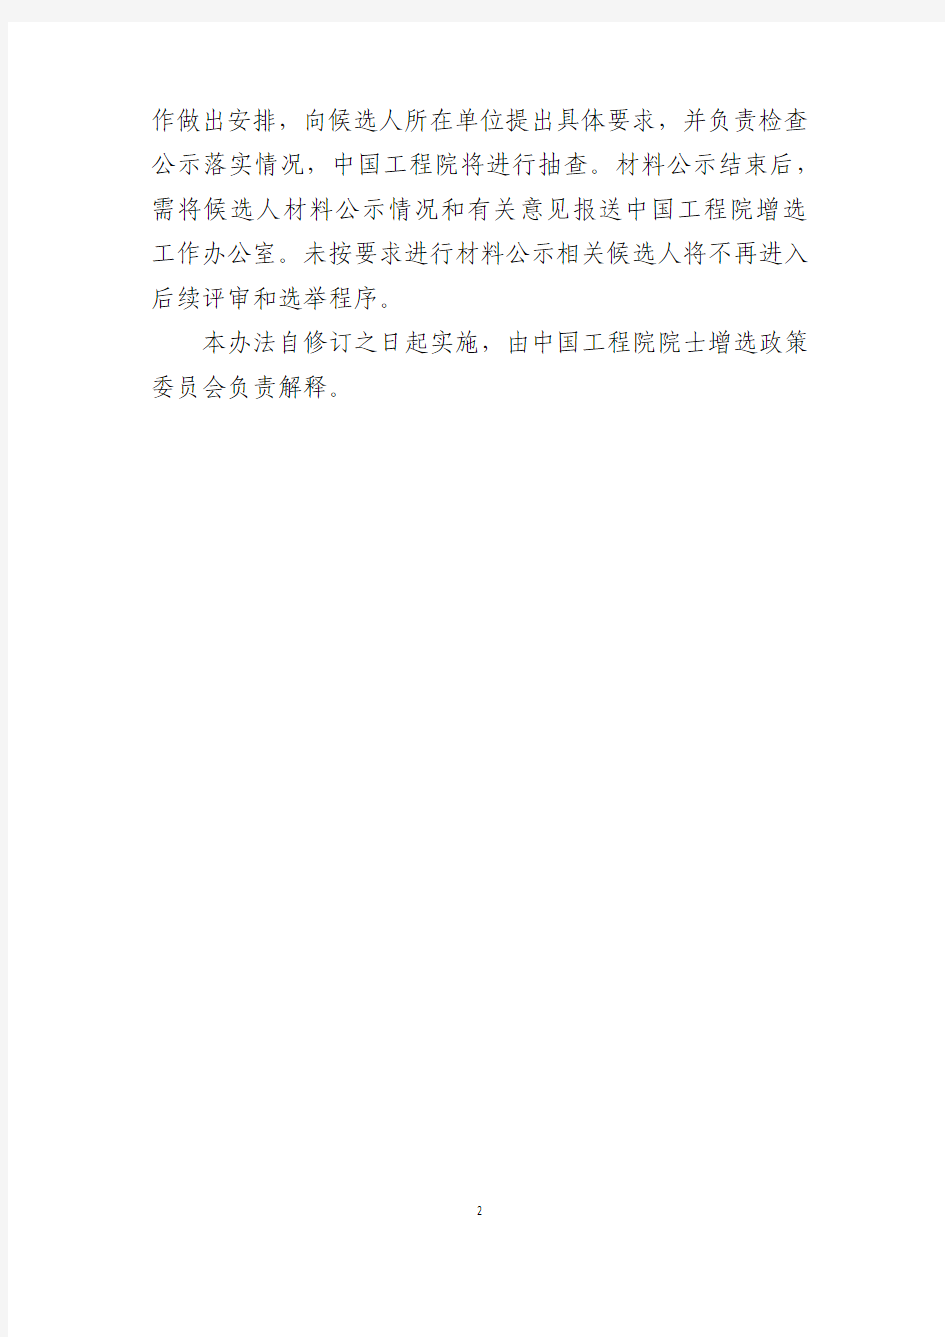 中国工程院院士增选候选人材料公示办法